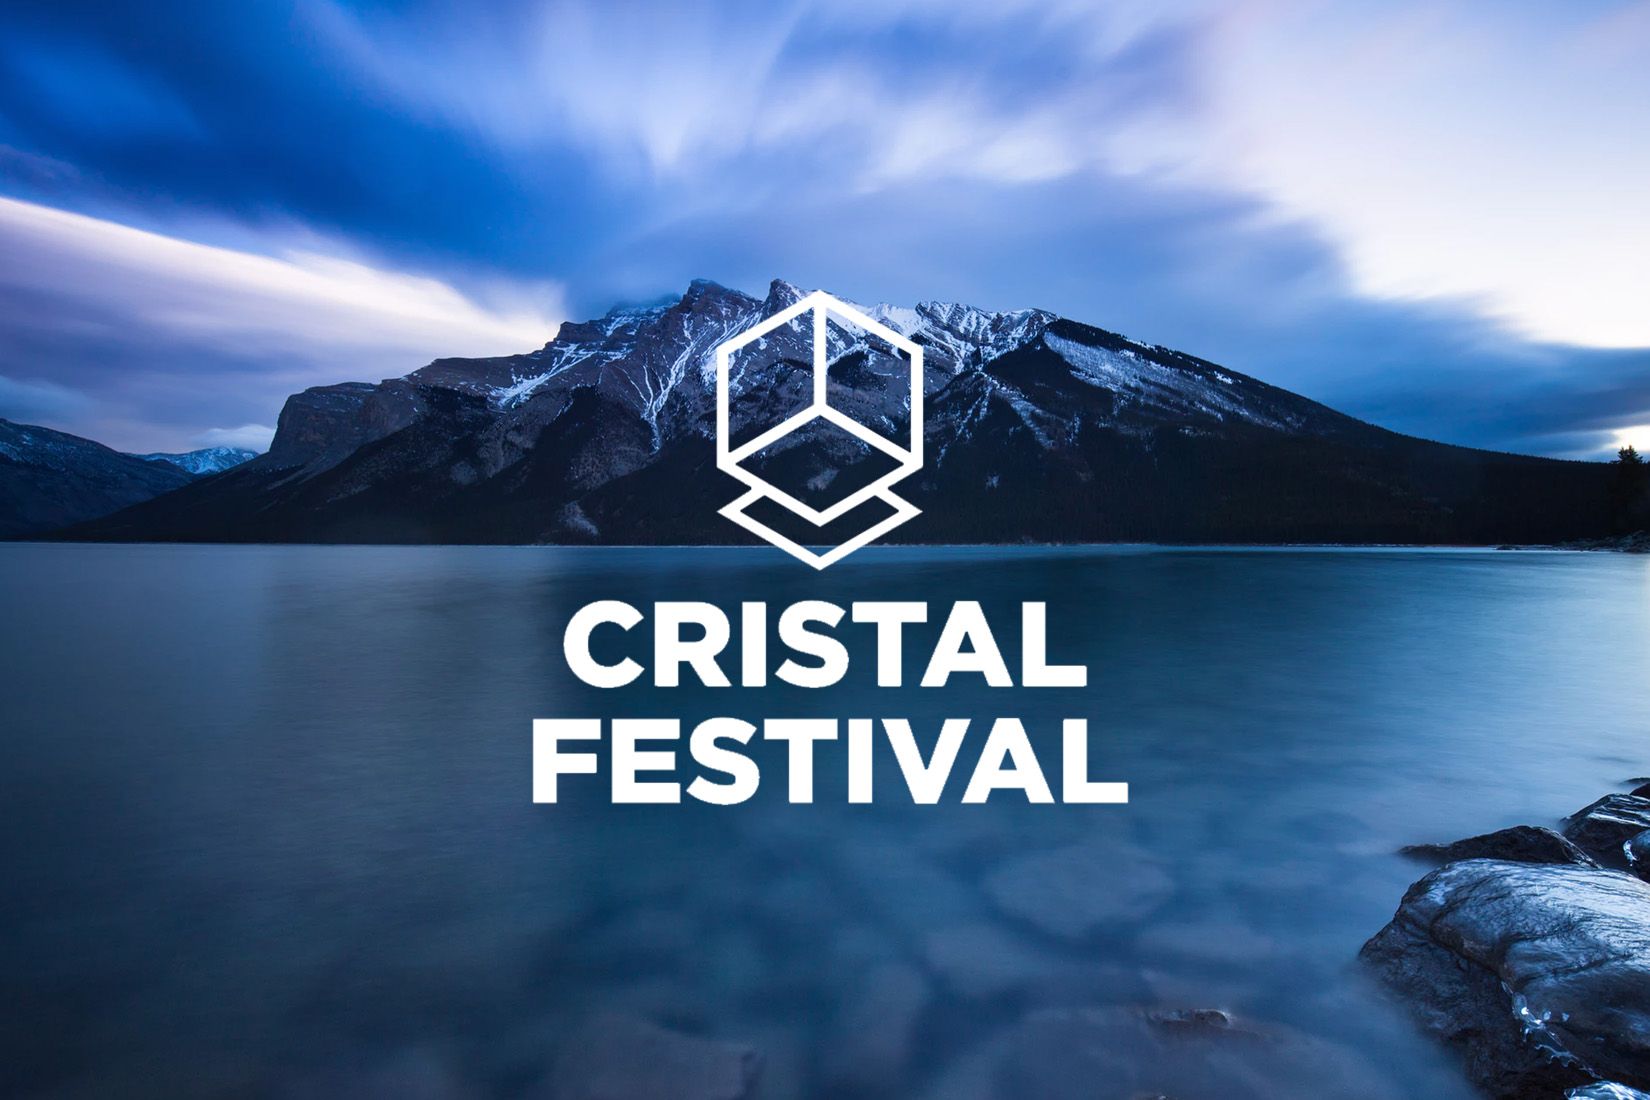 Logotype du Cristal Festival sur une image de lac avec une montagne en arrière plan